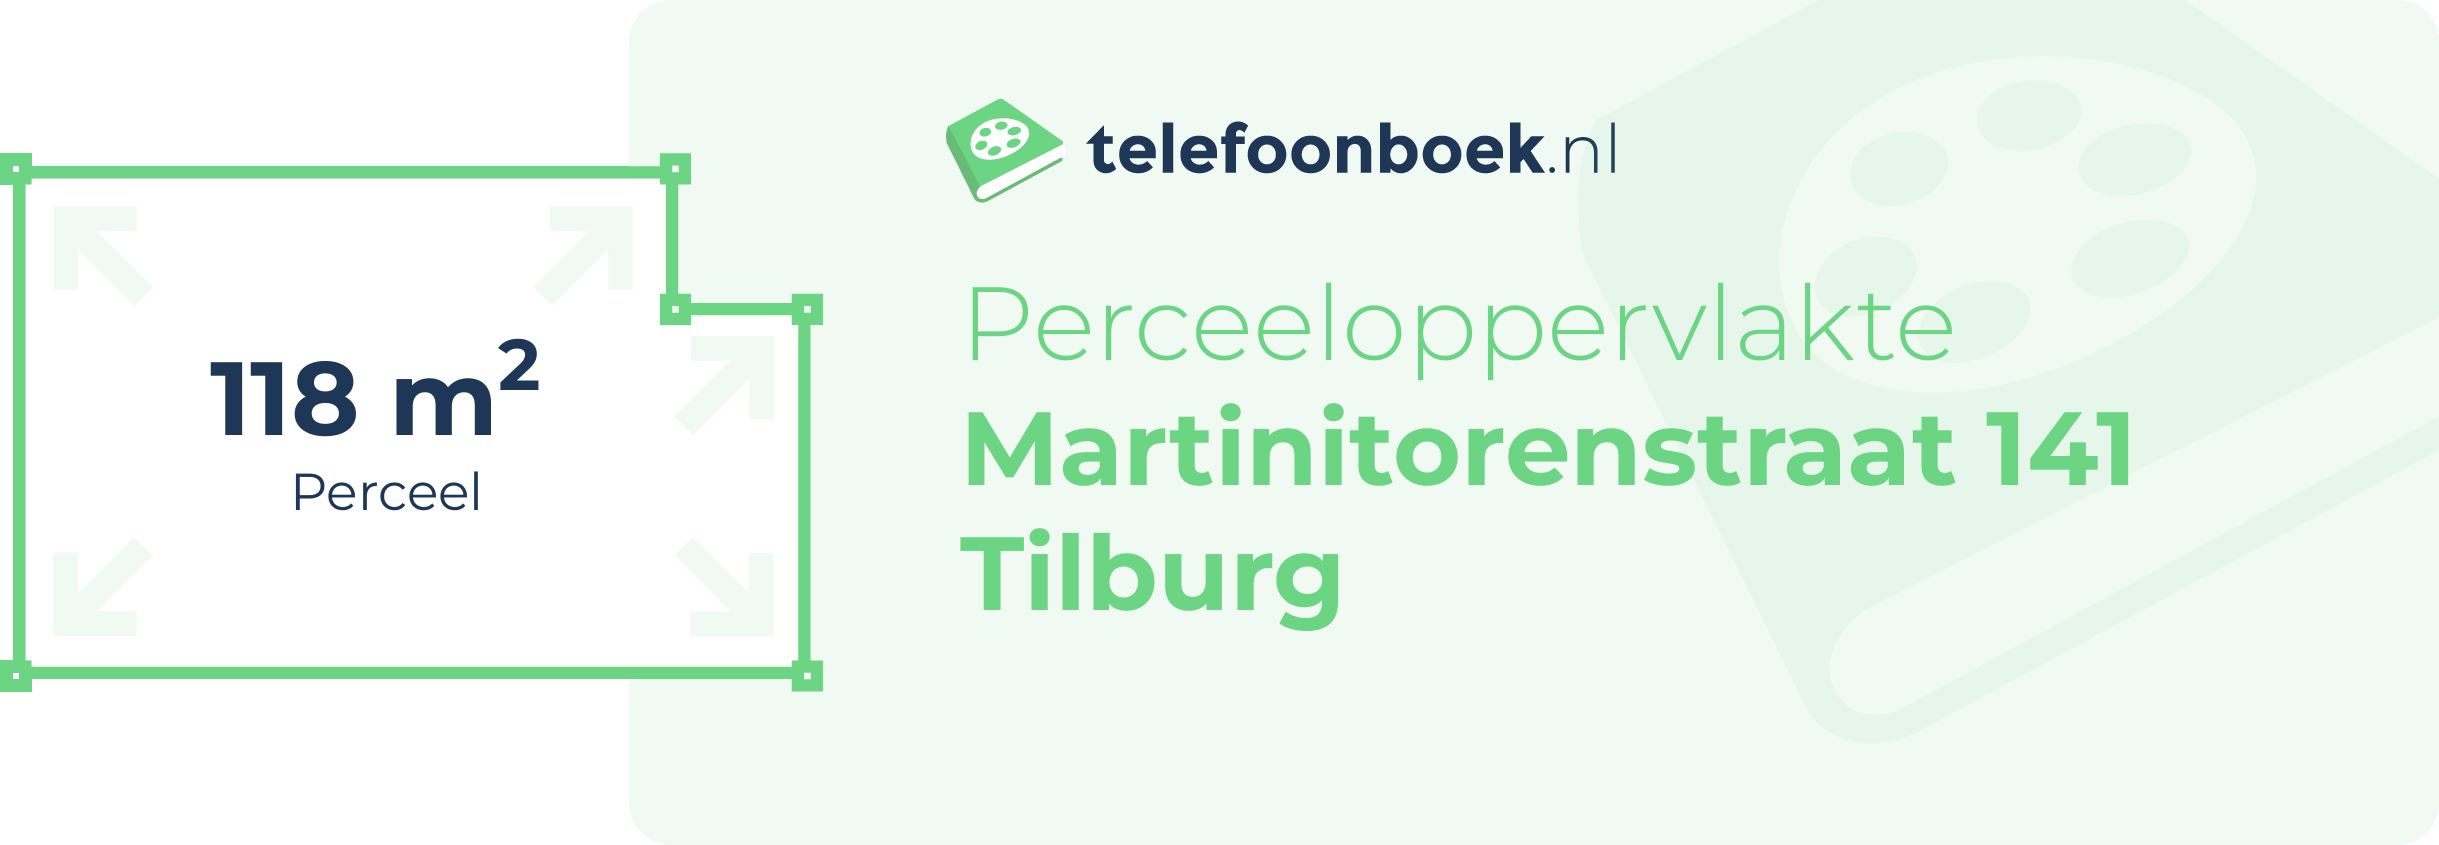 Perceeloppervlakte Martinitorenstraat 141 Tilburg